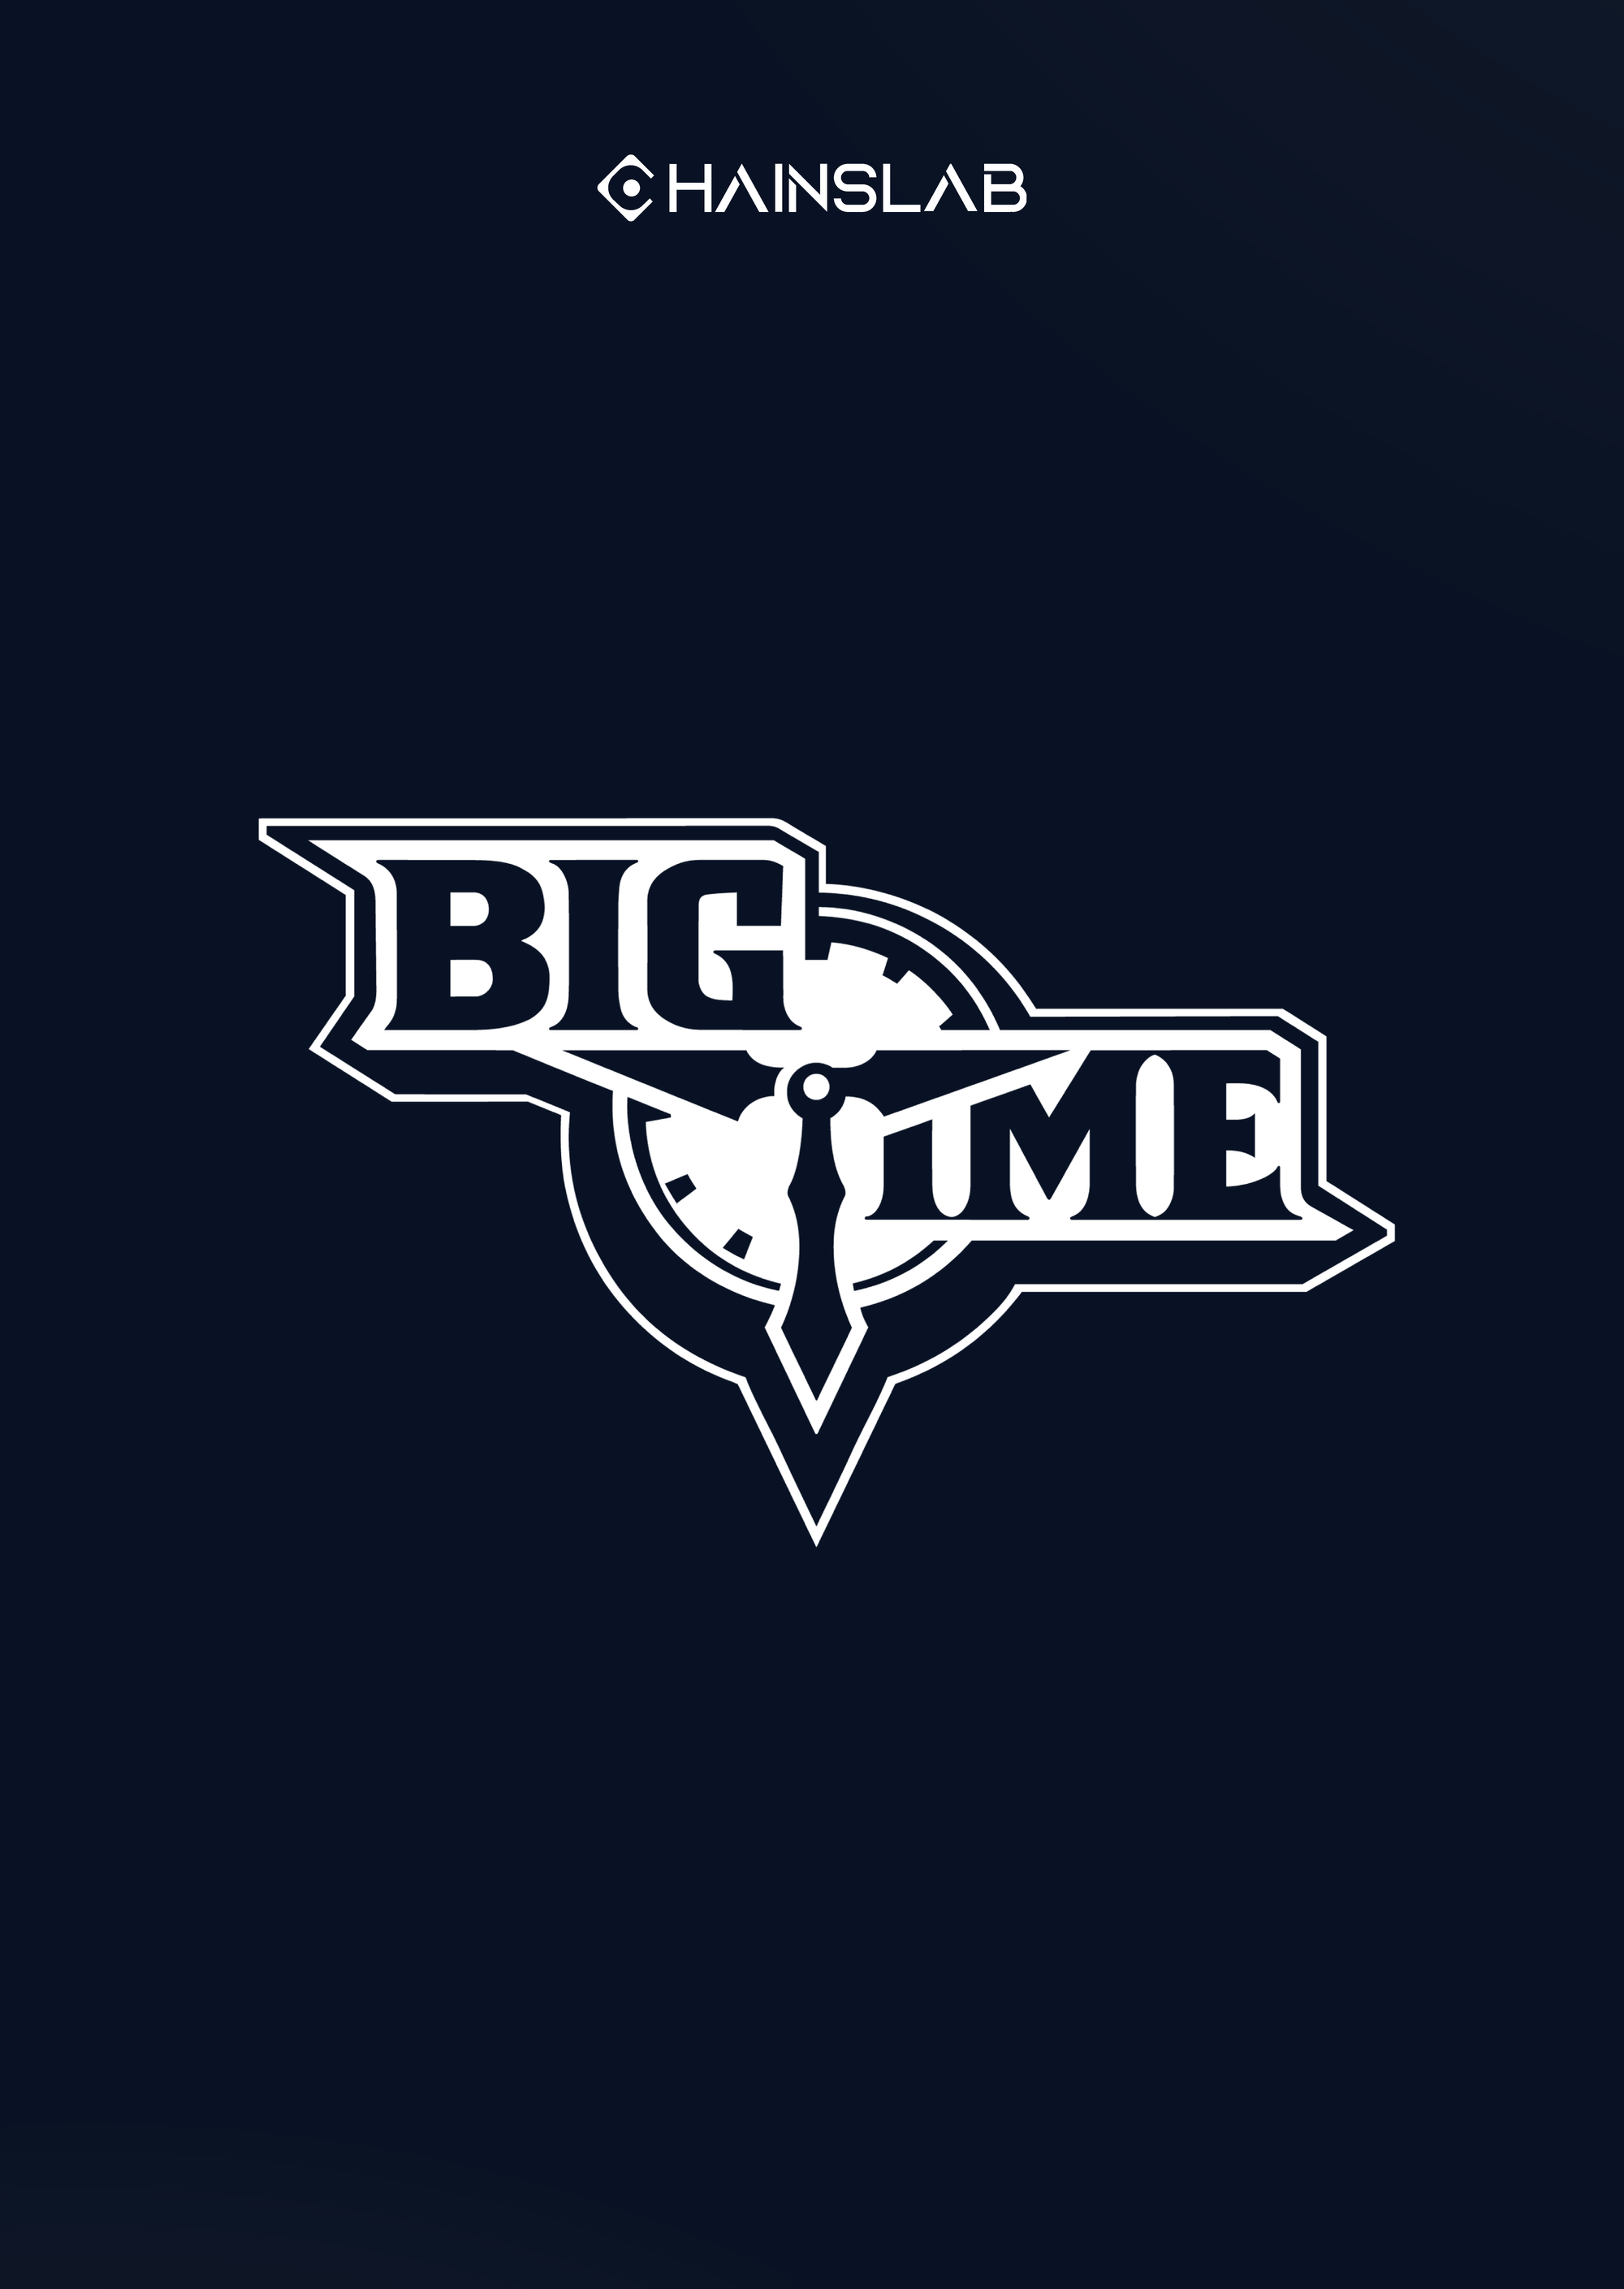 Big Time - The Comeback of GameFi?